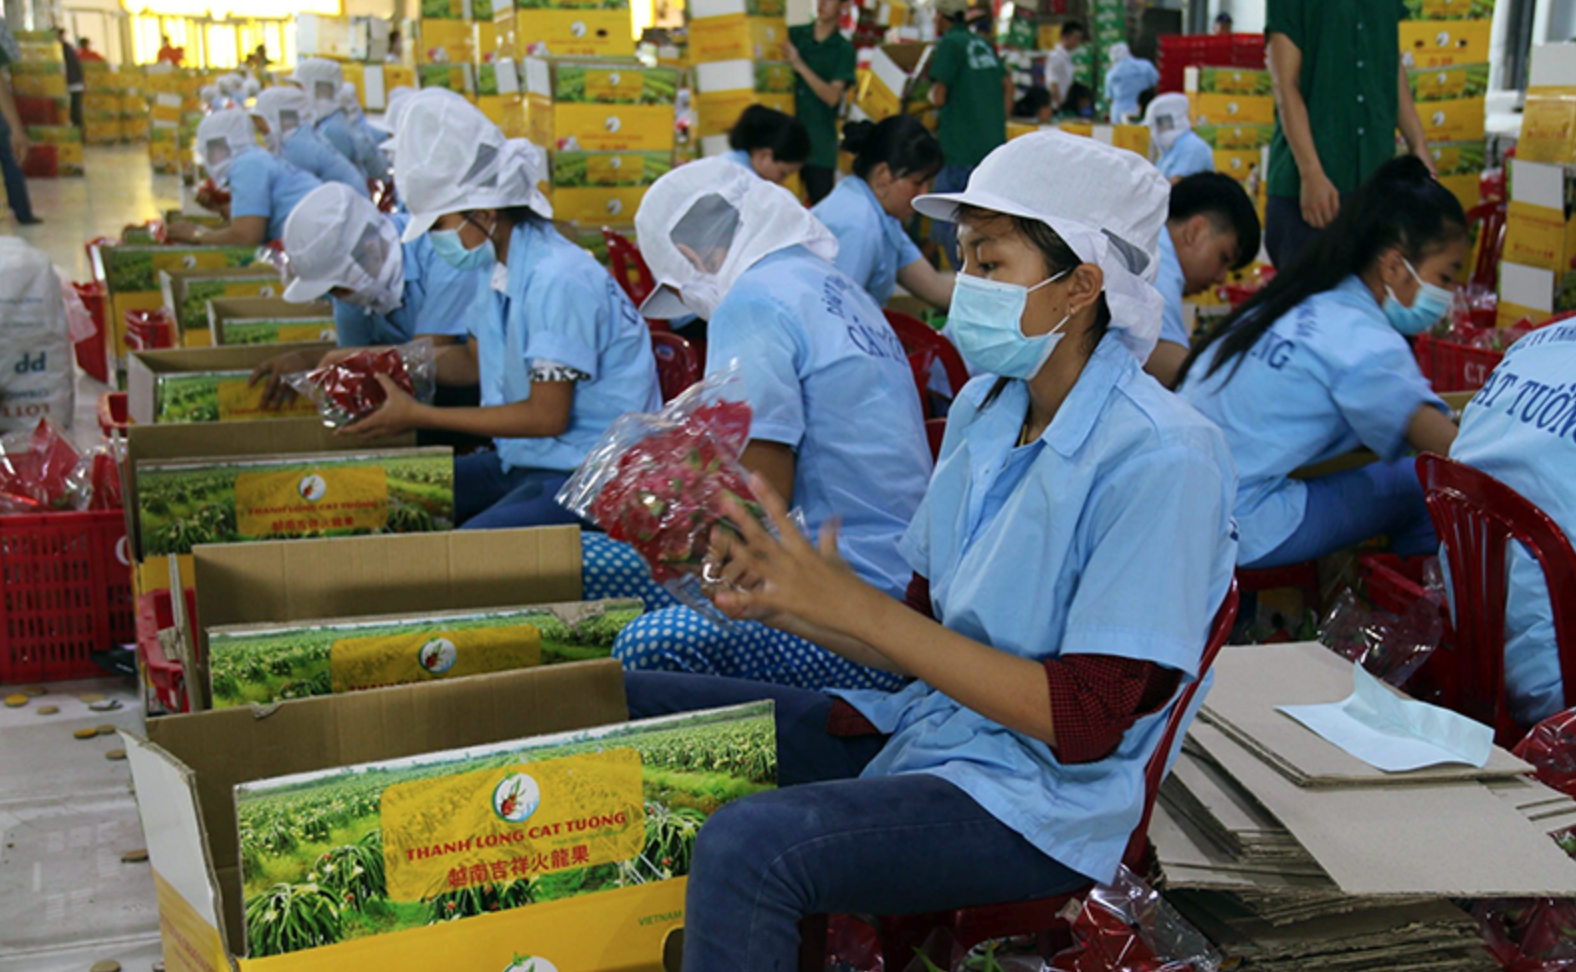 Ùn tắt ở cửa khẩu, xuất khẩu rau quả của Viêt Nam giảm 16%